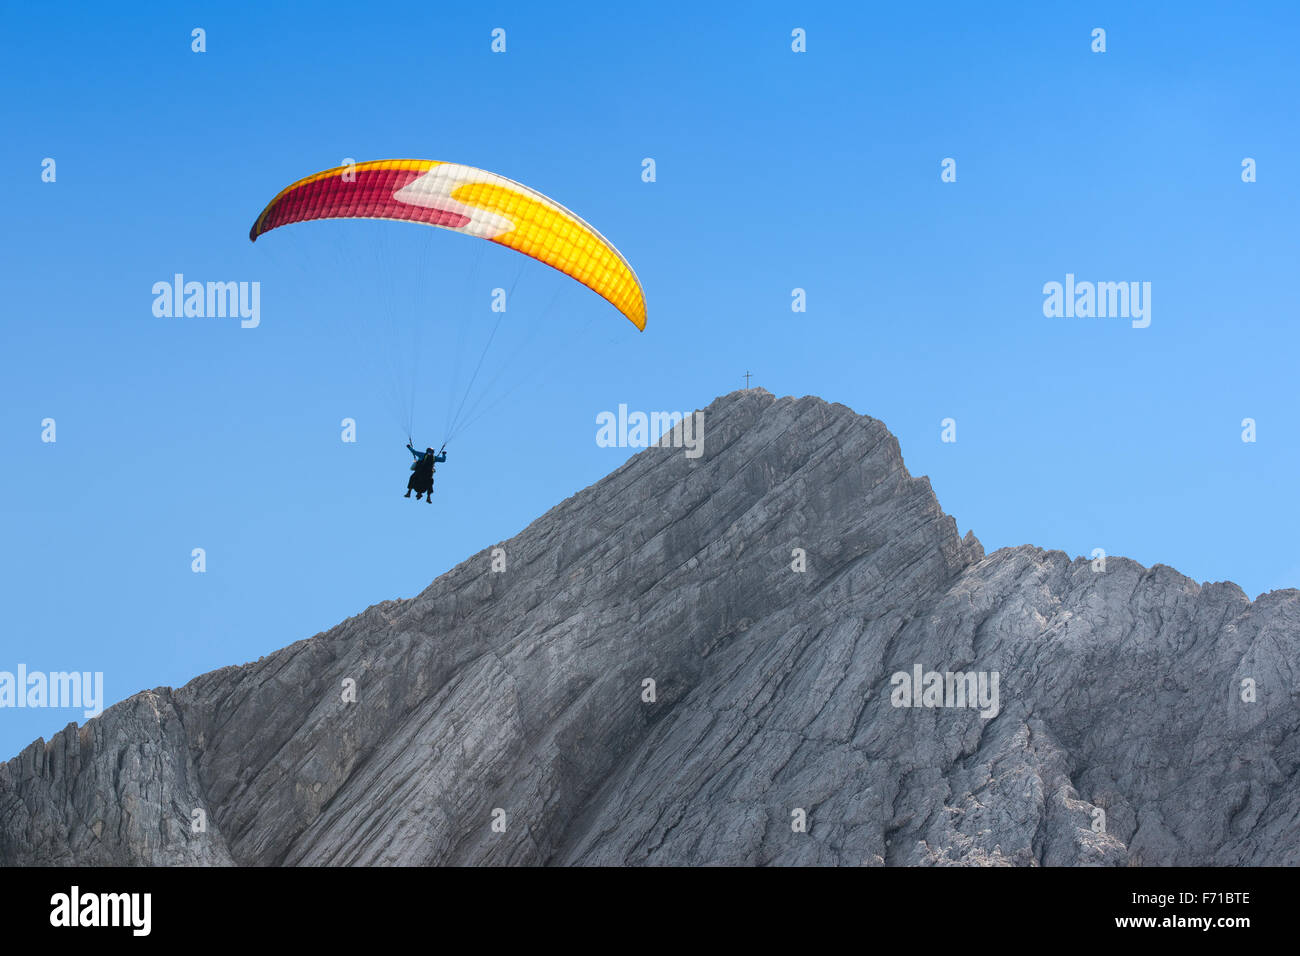 Gleitschirm frei schweben in großer Höhe in wolkenlosen Himmel über Dolomiten Alpen Gipfel mount Stockfoto